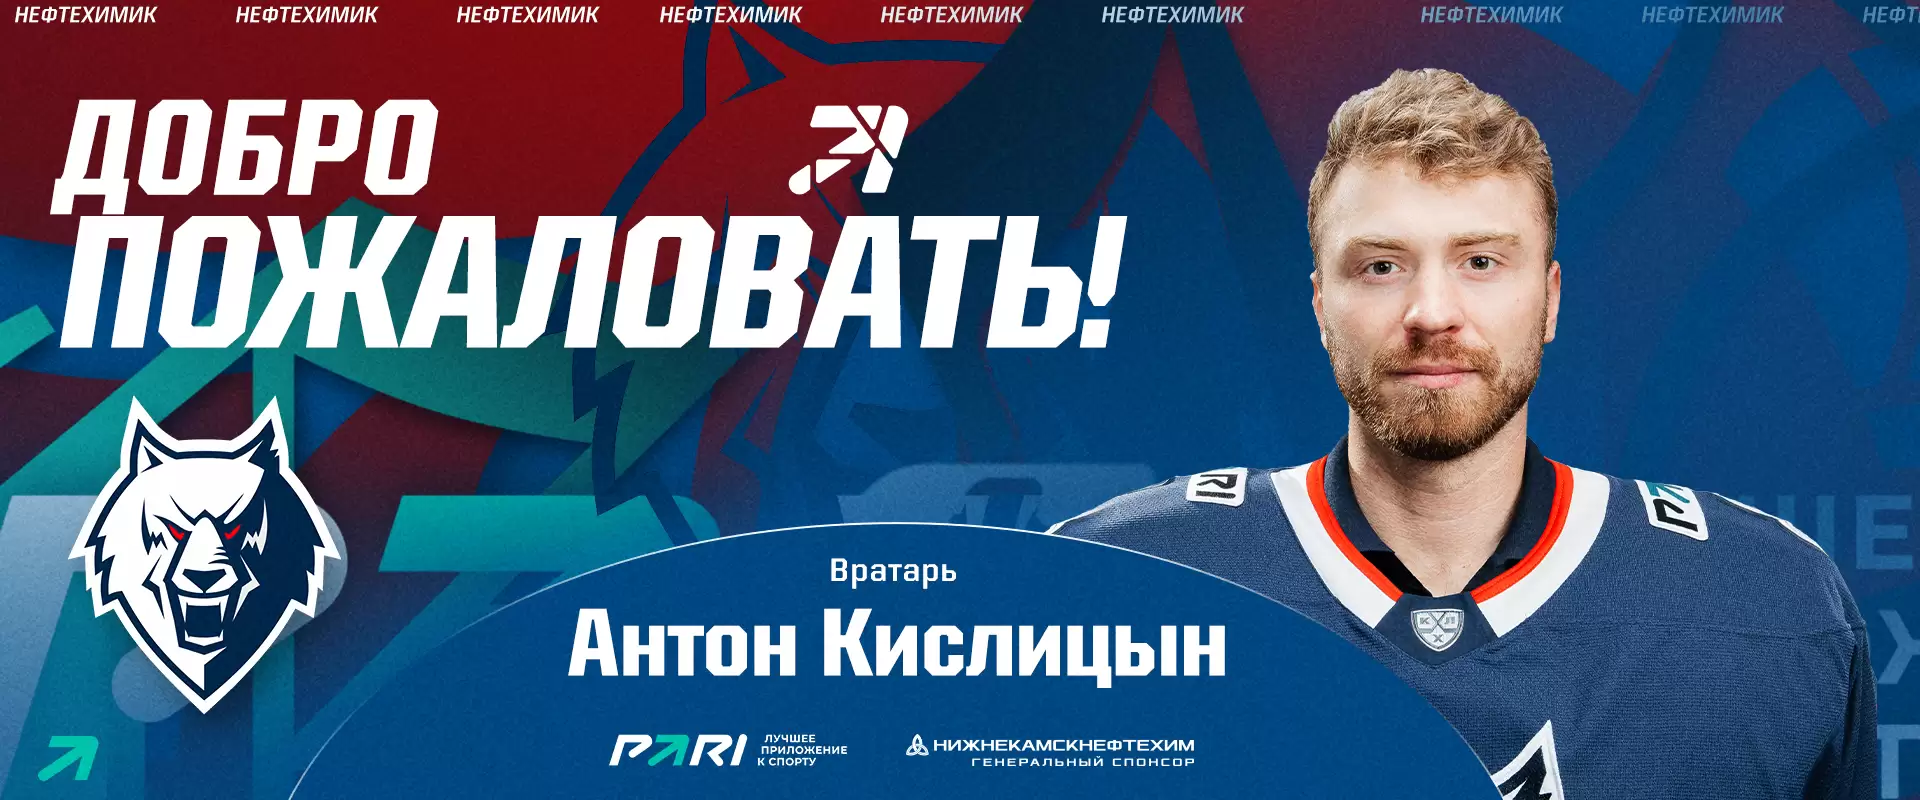 Нижнекамский хоккеист Антон Кислицын через 3 года после завершения карьеры будет играть в КХЛ